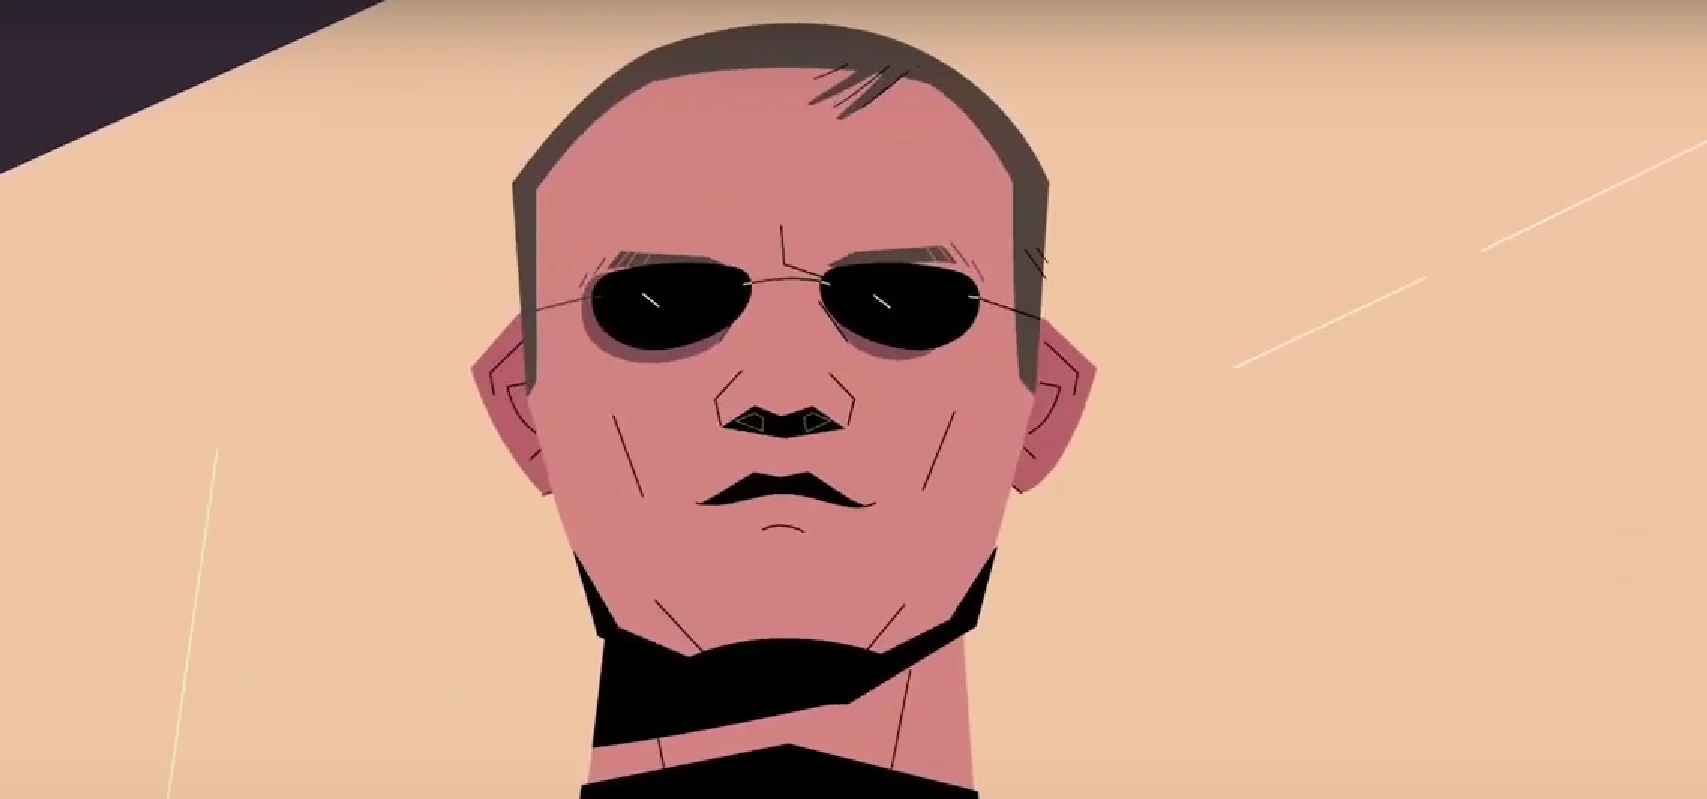 Вышел трейлер документалки о Викторе Пелевине от авторов «Дурова» - изображение 1